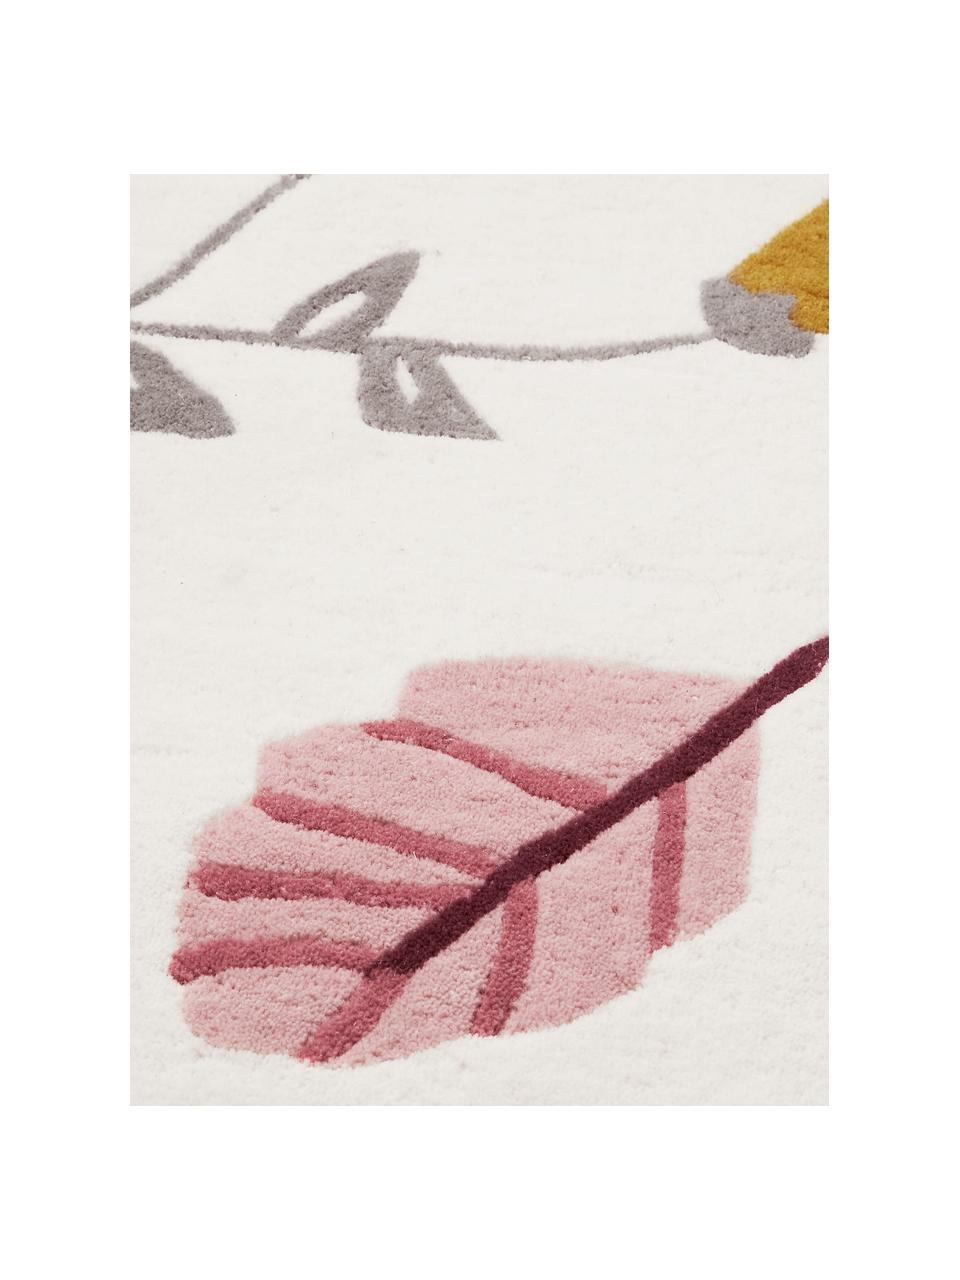 Tappeto in lana a pelo corto Pressed Leaves, Lana, Color crema, multicolore, fantasia, Ø 110 cm